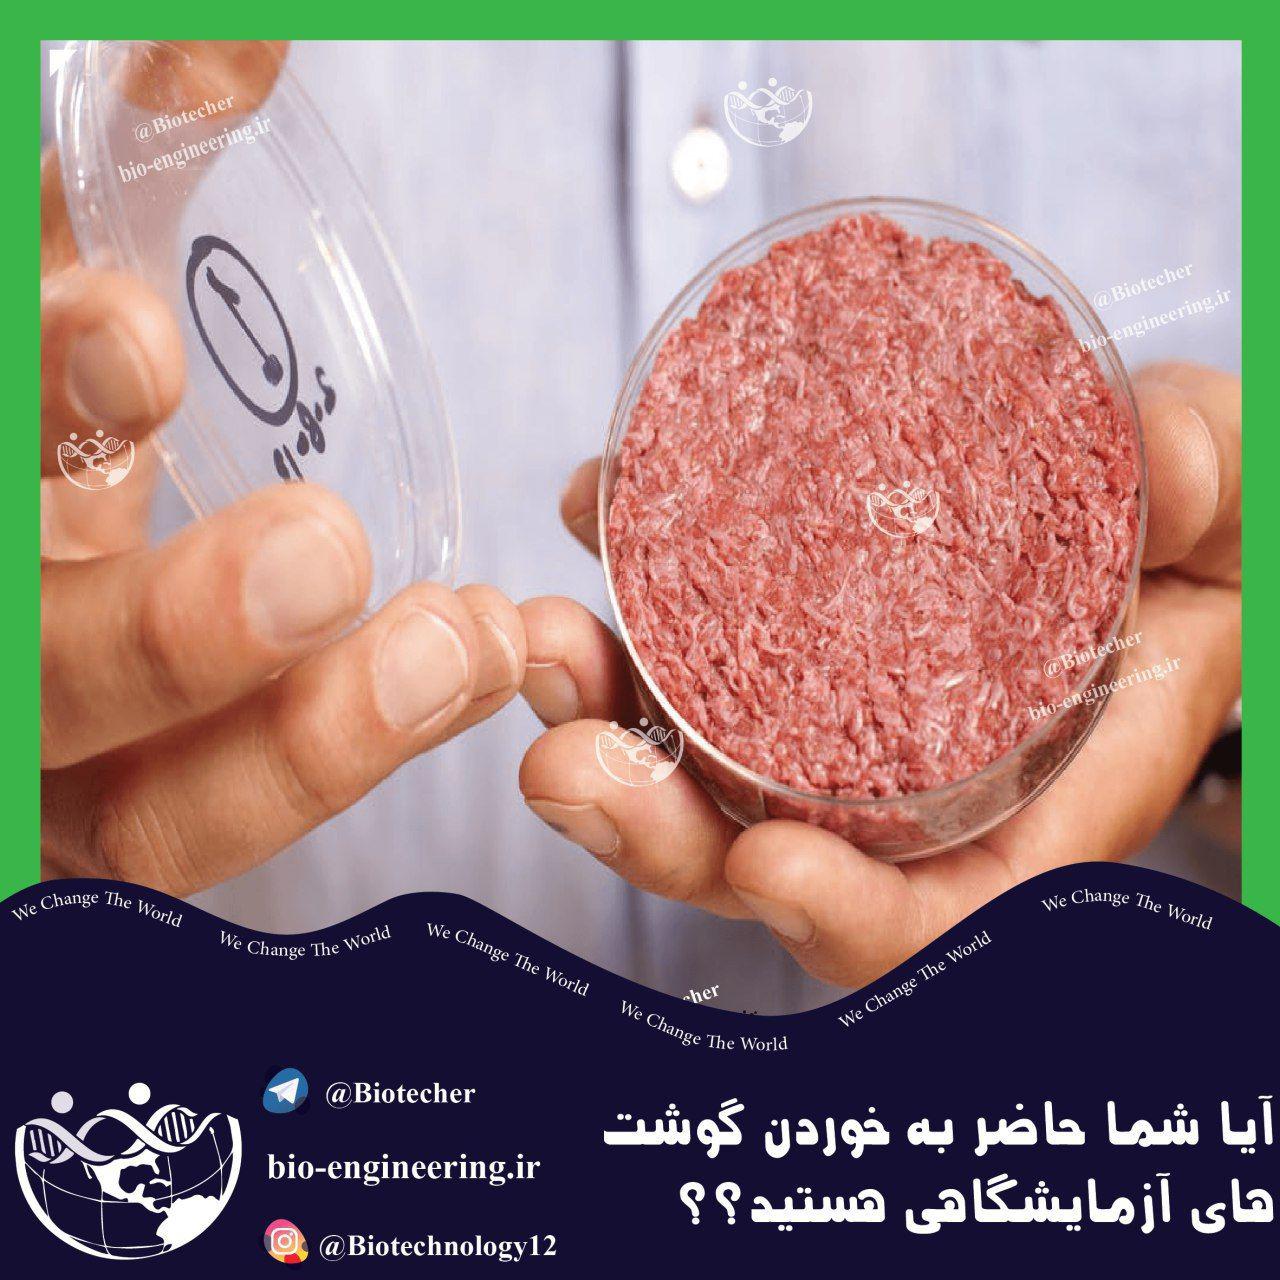 آیا حاضر به خوردن گوشت آزمایشگاهی هستید؟